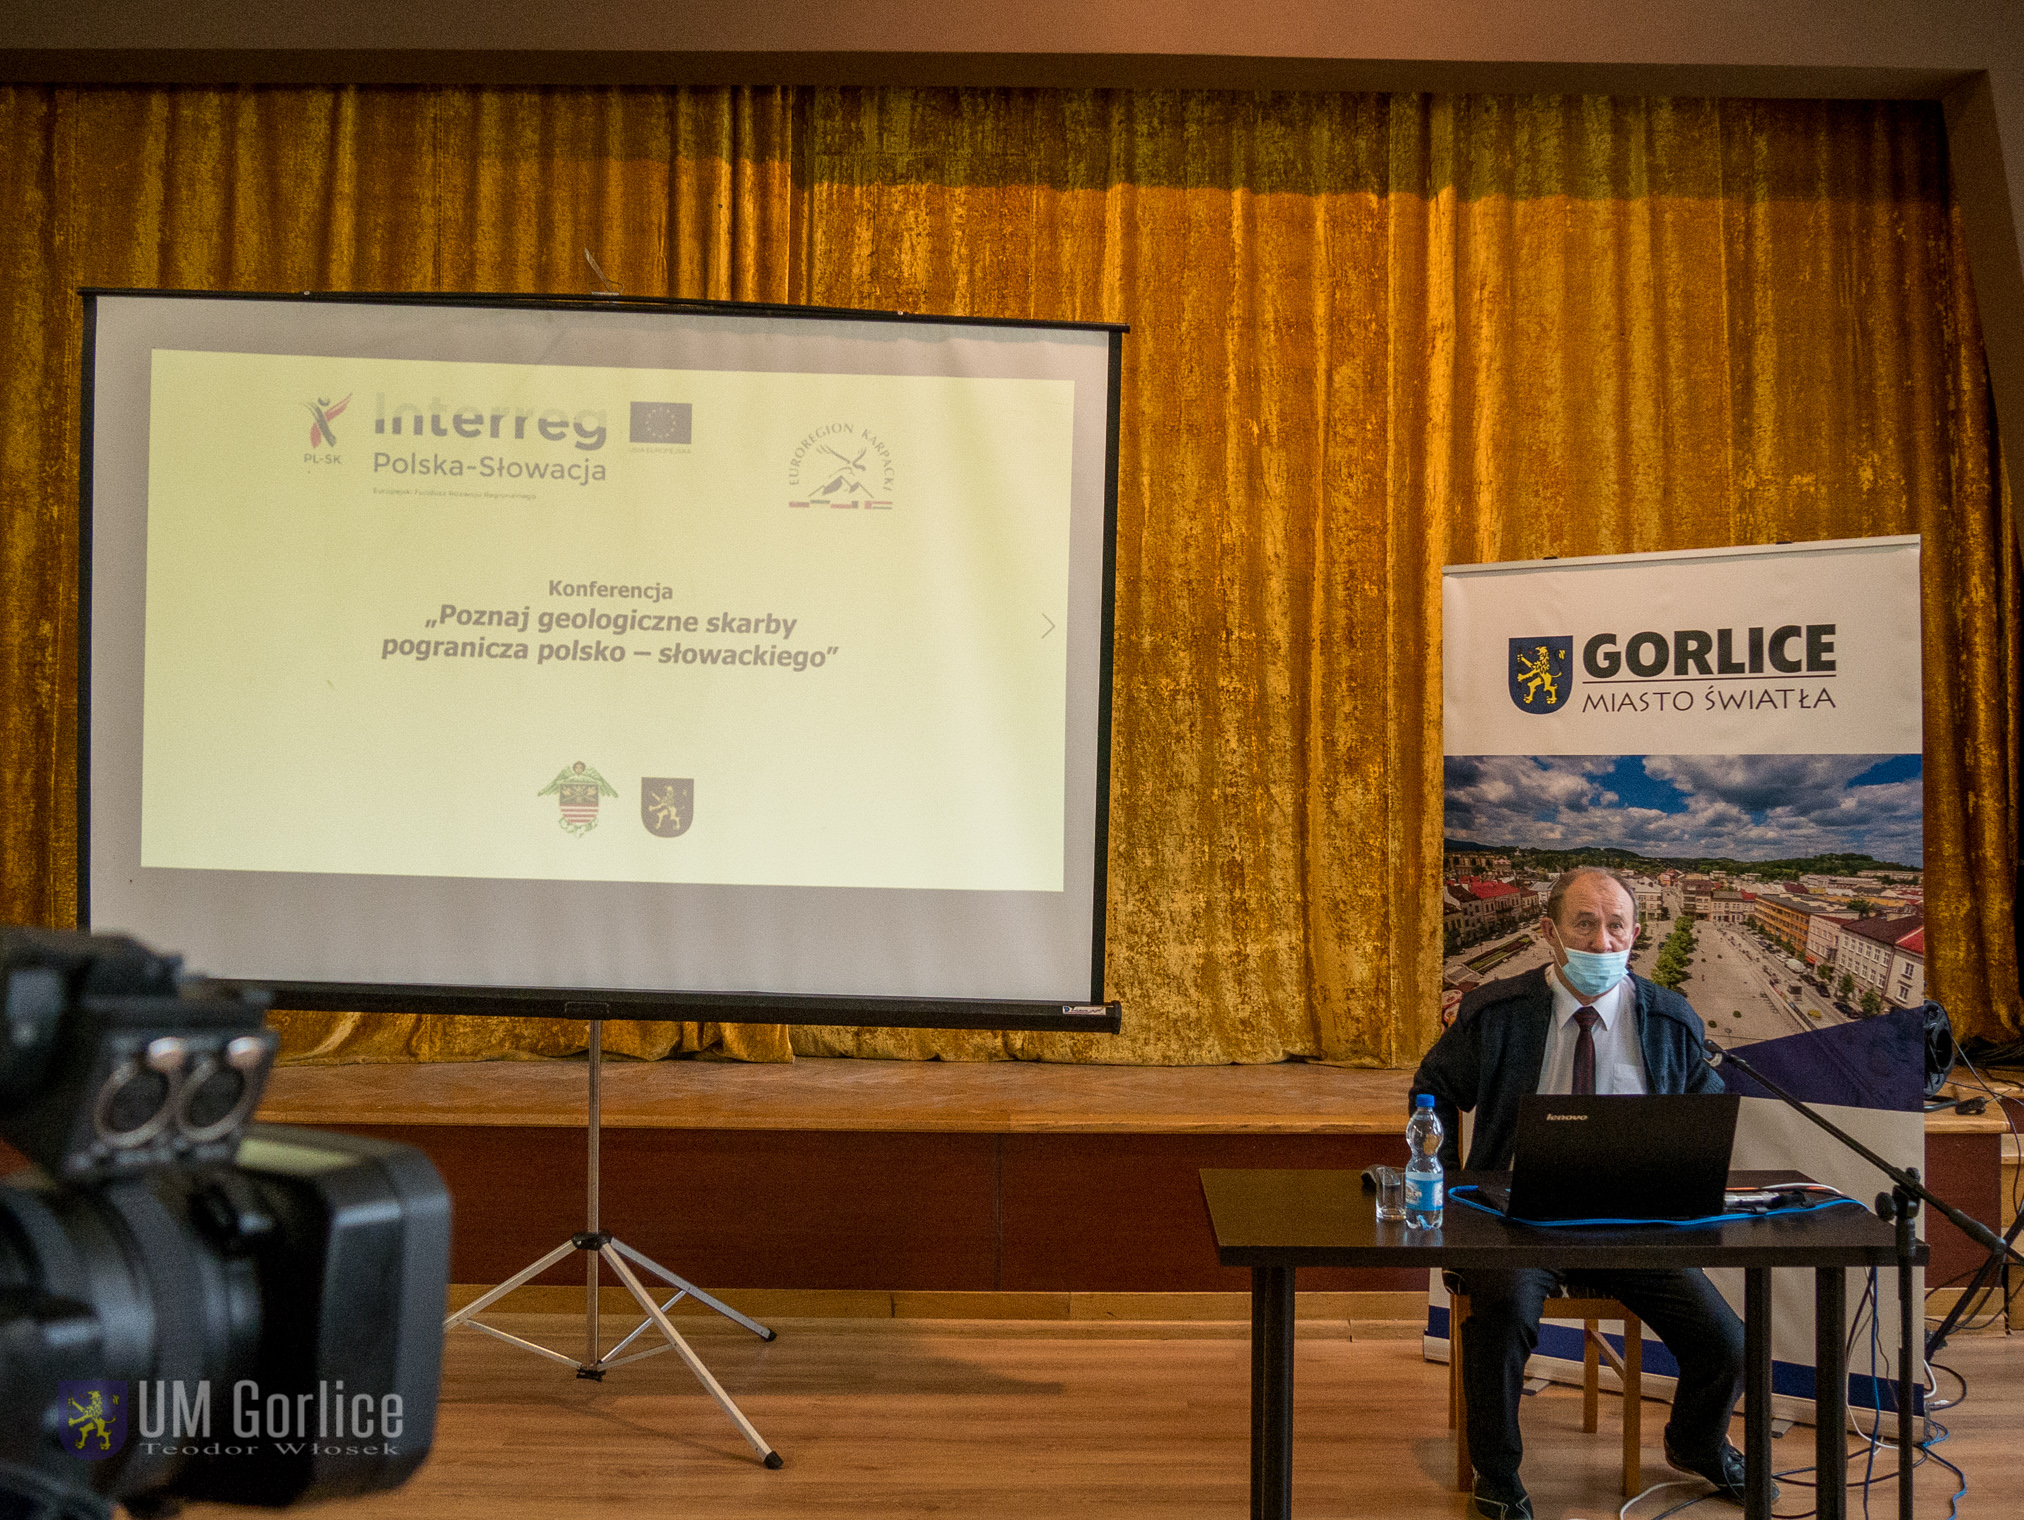 Konferencja „Poznaj geologiczne skarby pogranicza polsko – słowackiego” - oficjalne rozpoczęcie